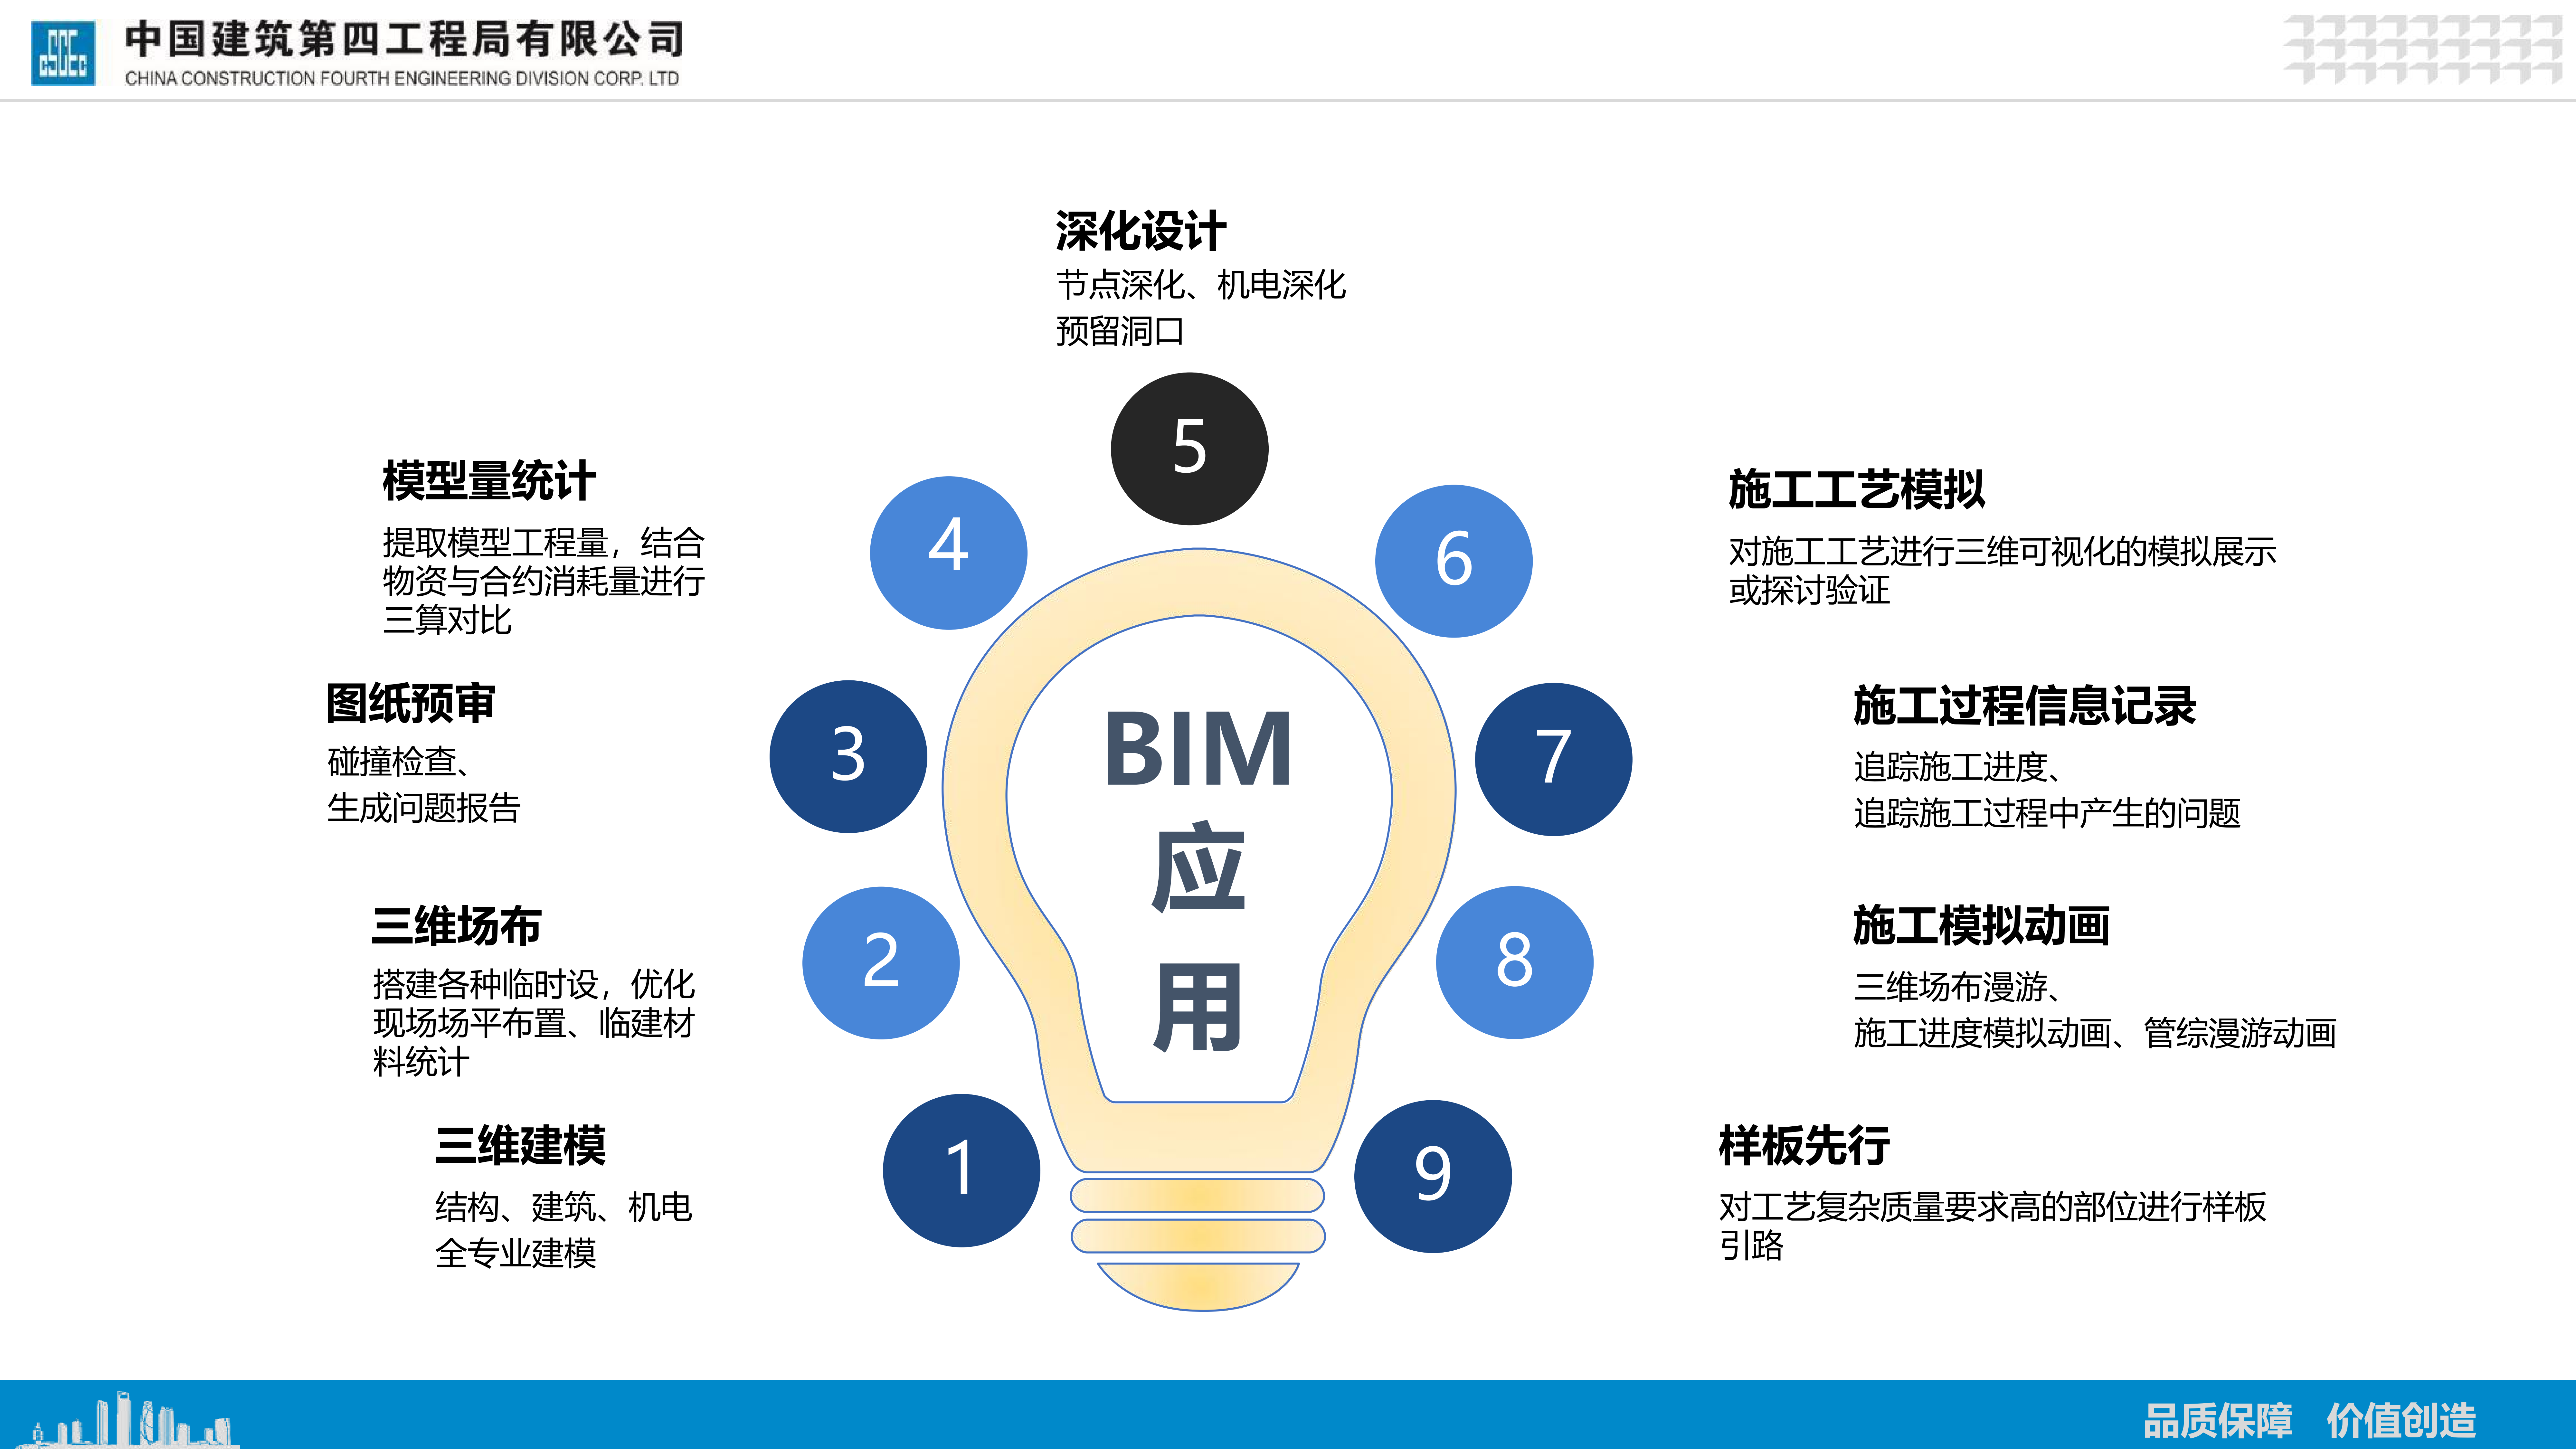 安居博文苑全过程BIM技术应用png_Page7